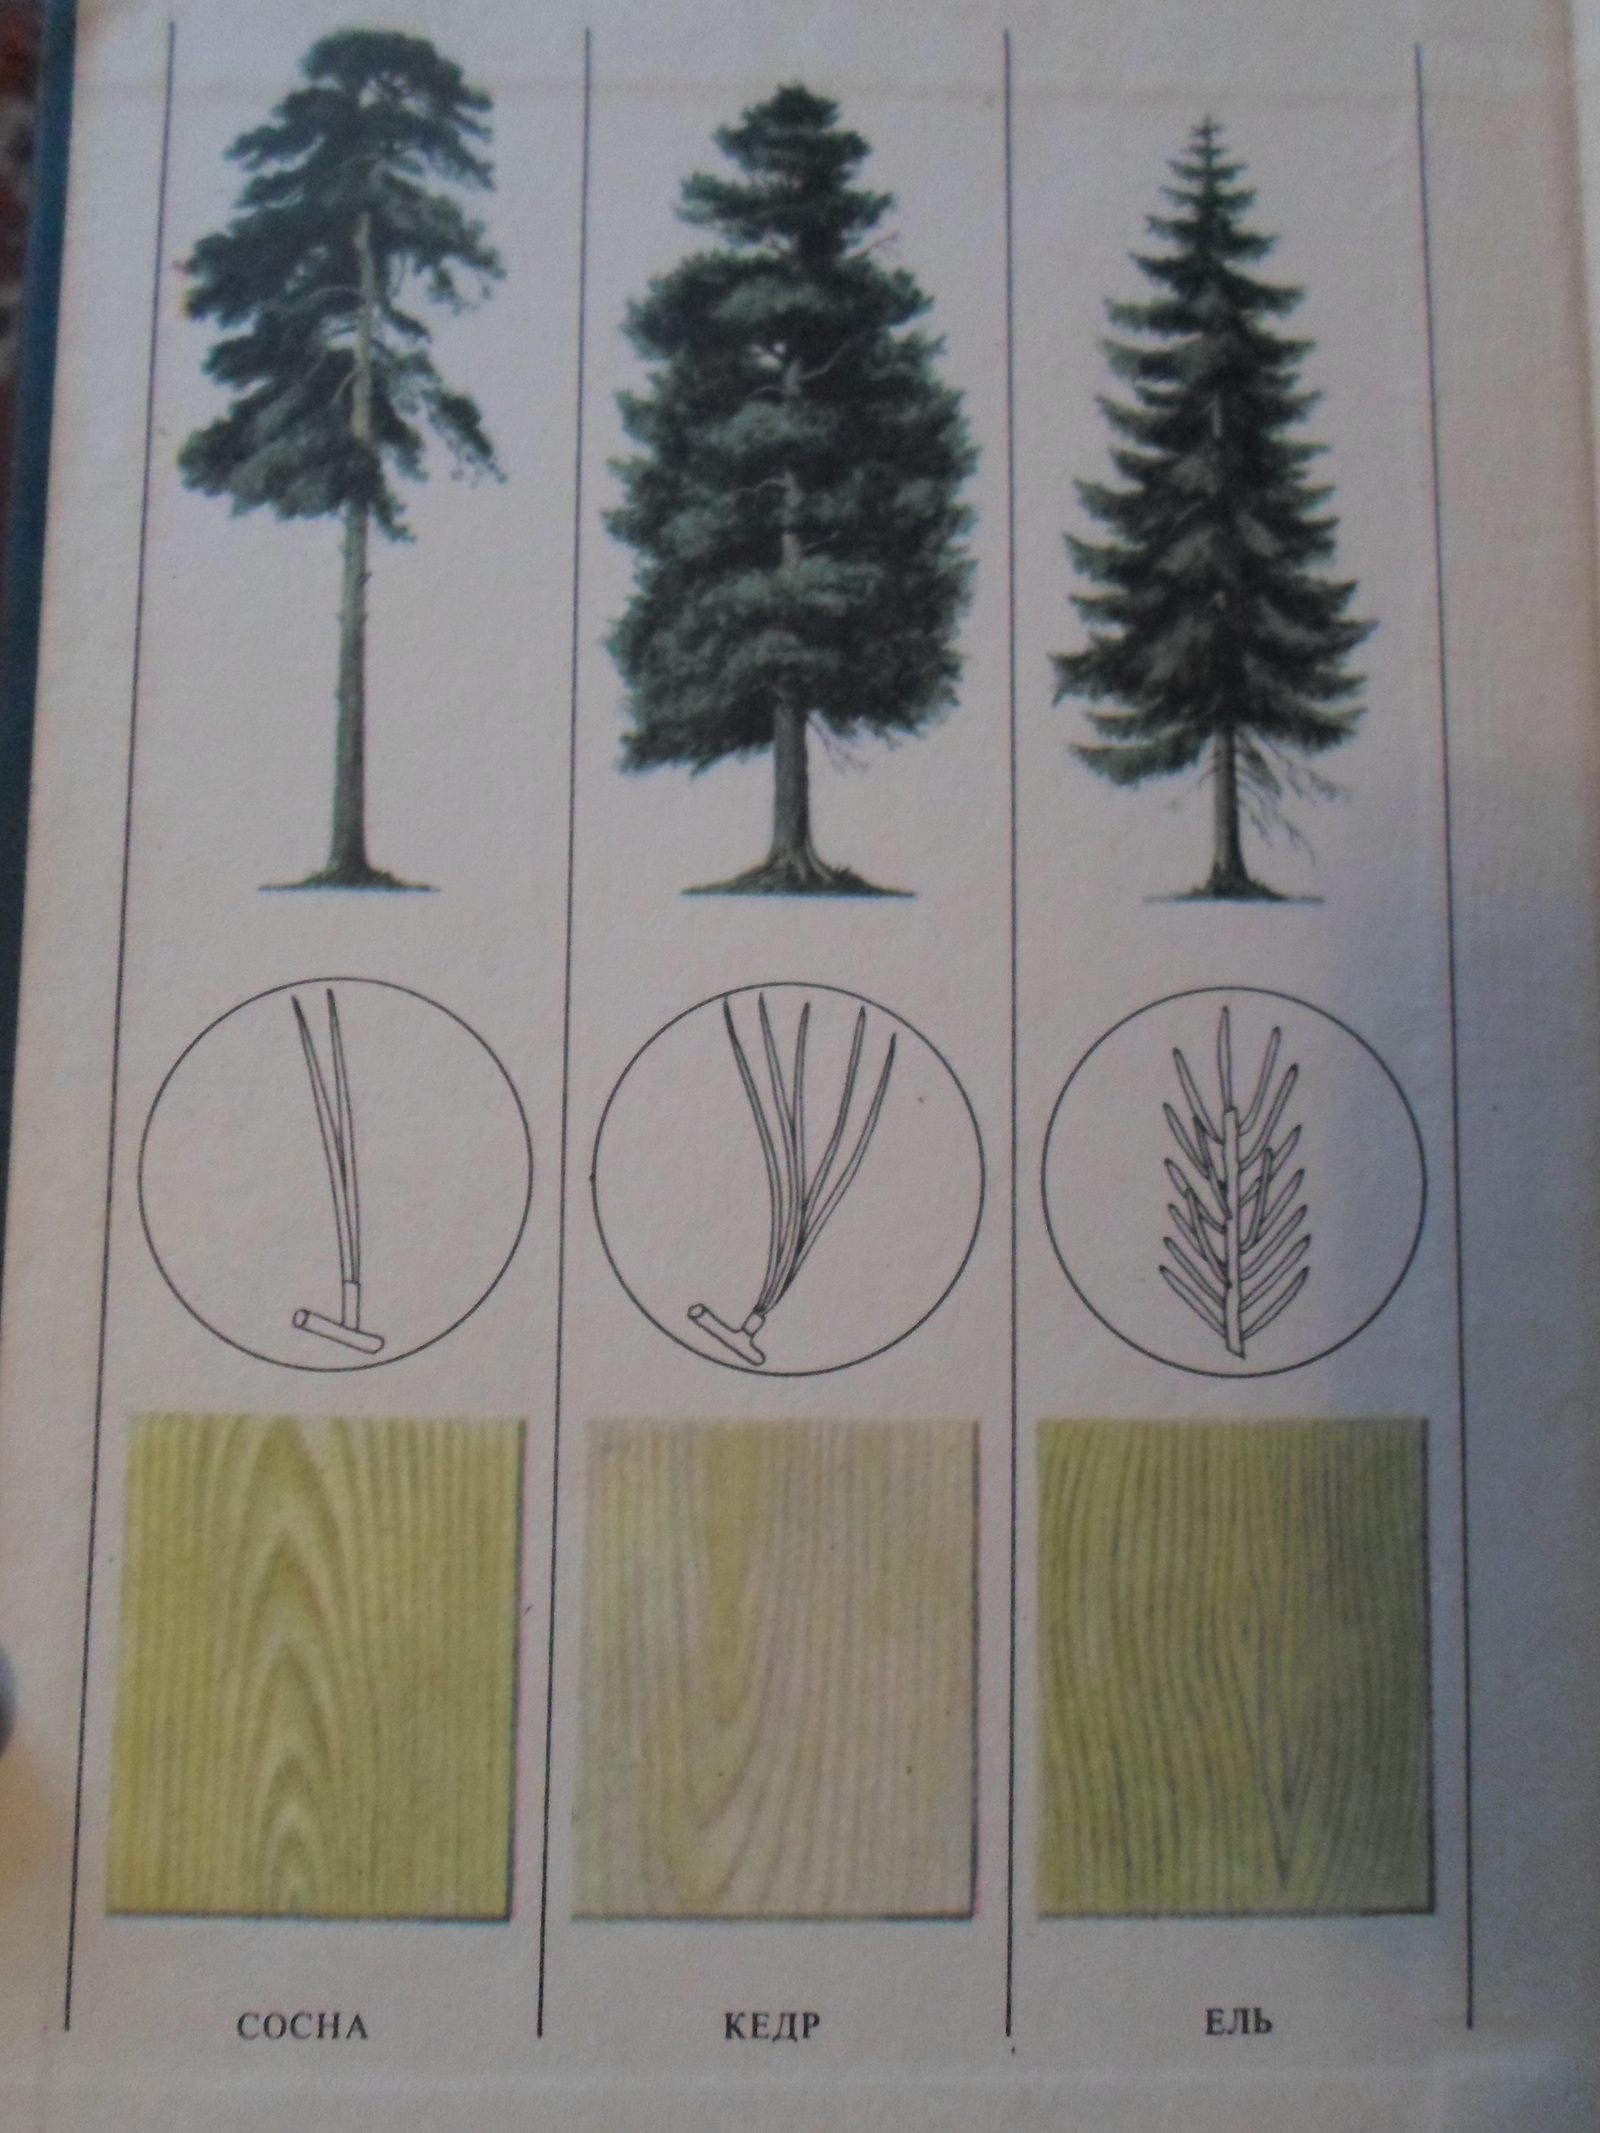 Определить породу дерева по фото листьев